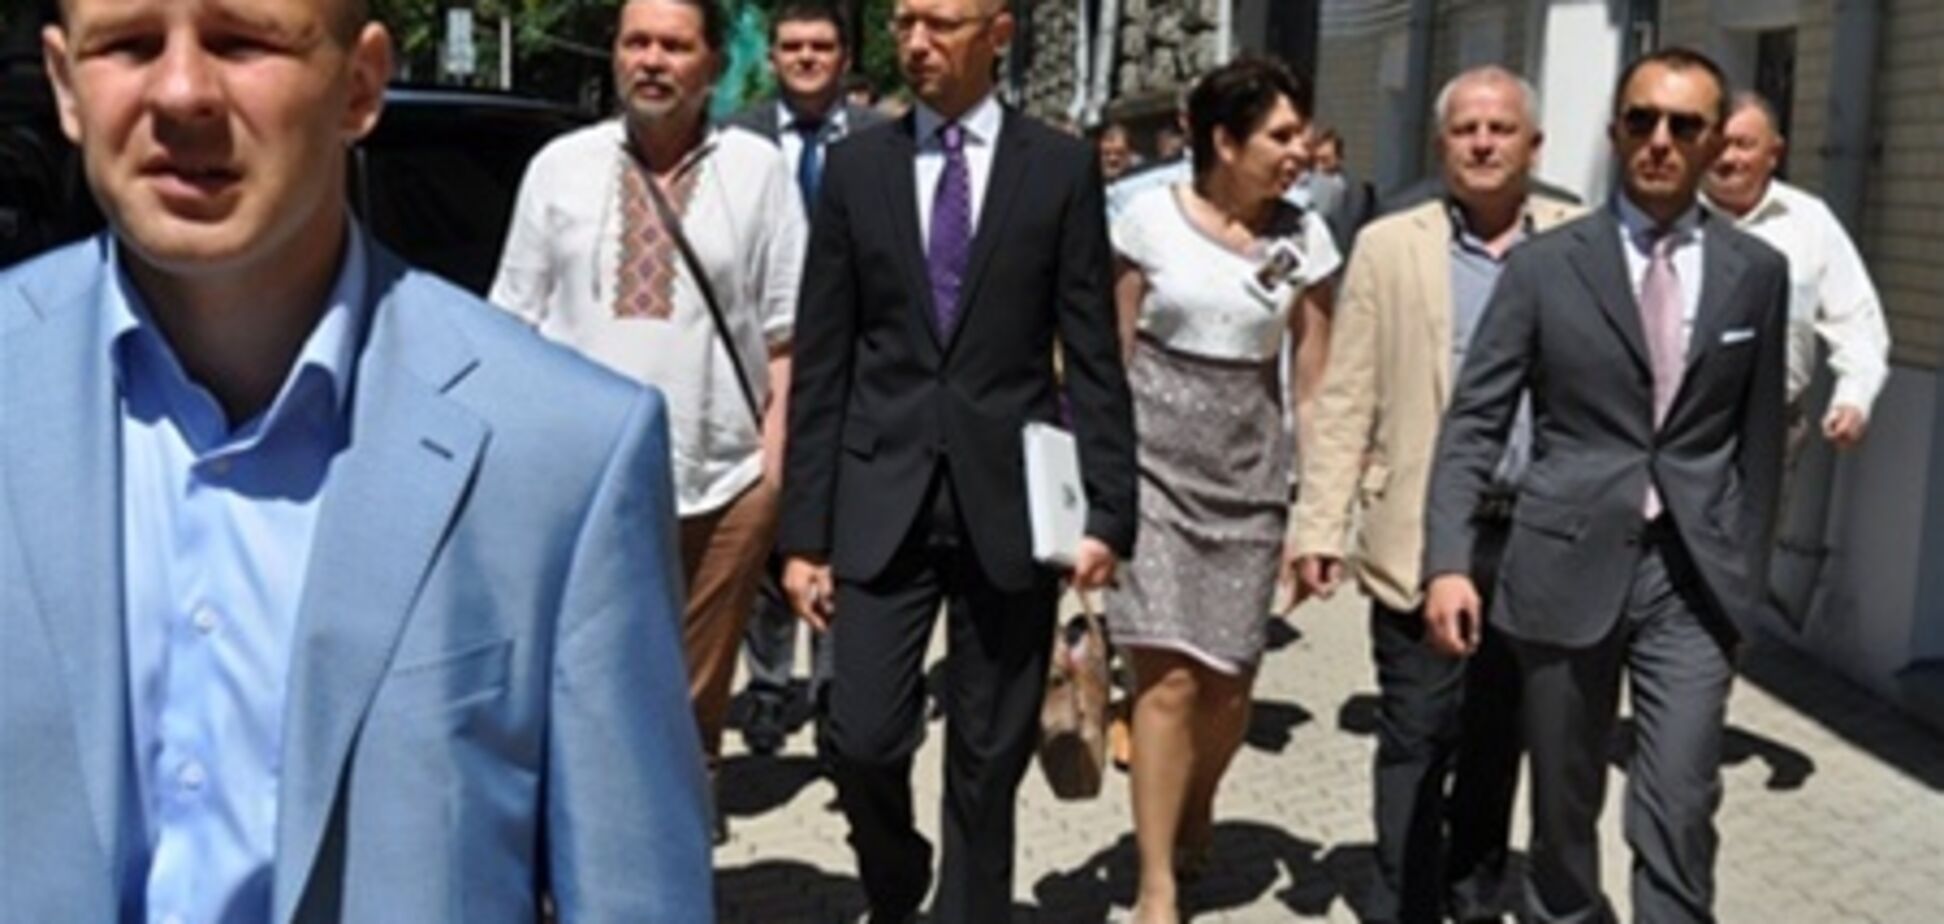 Яценюк пришел на встречу с Президентом со списком требований